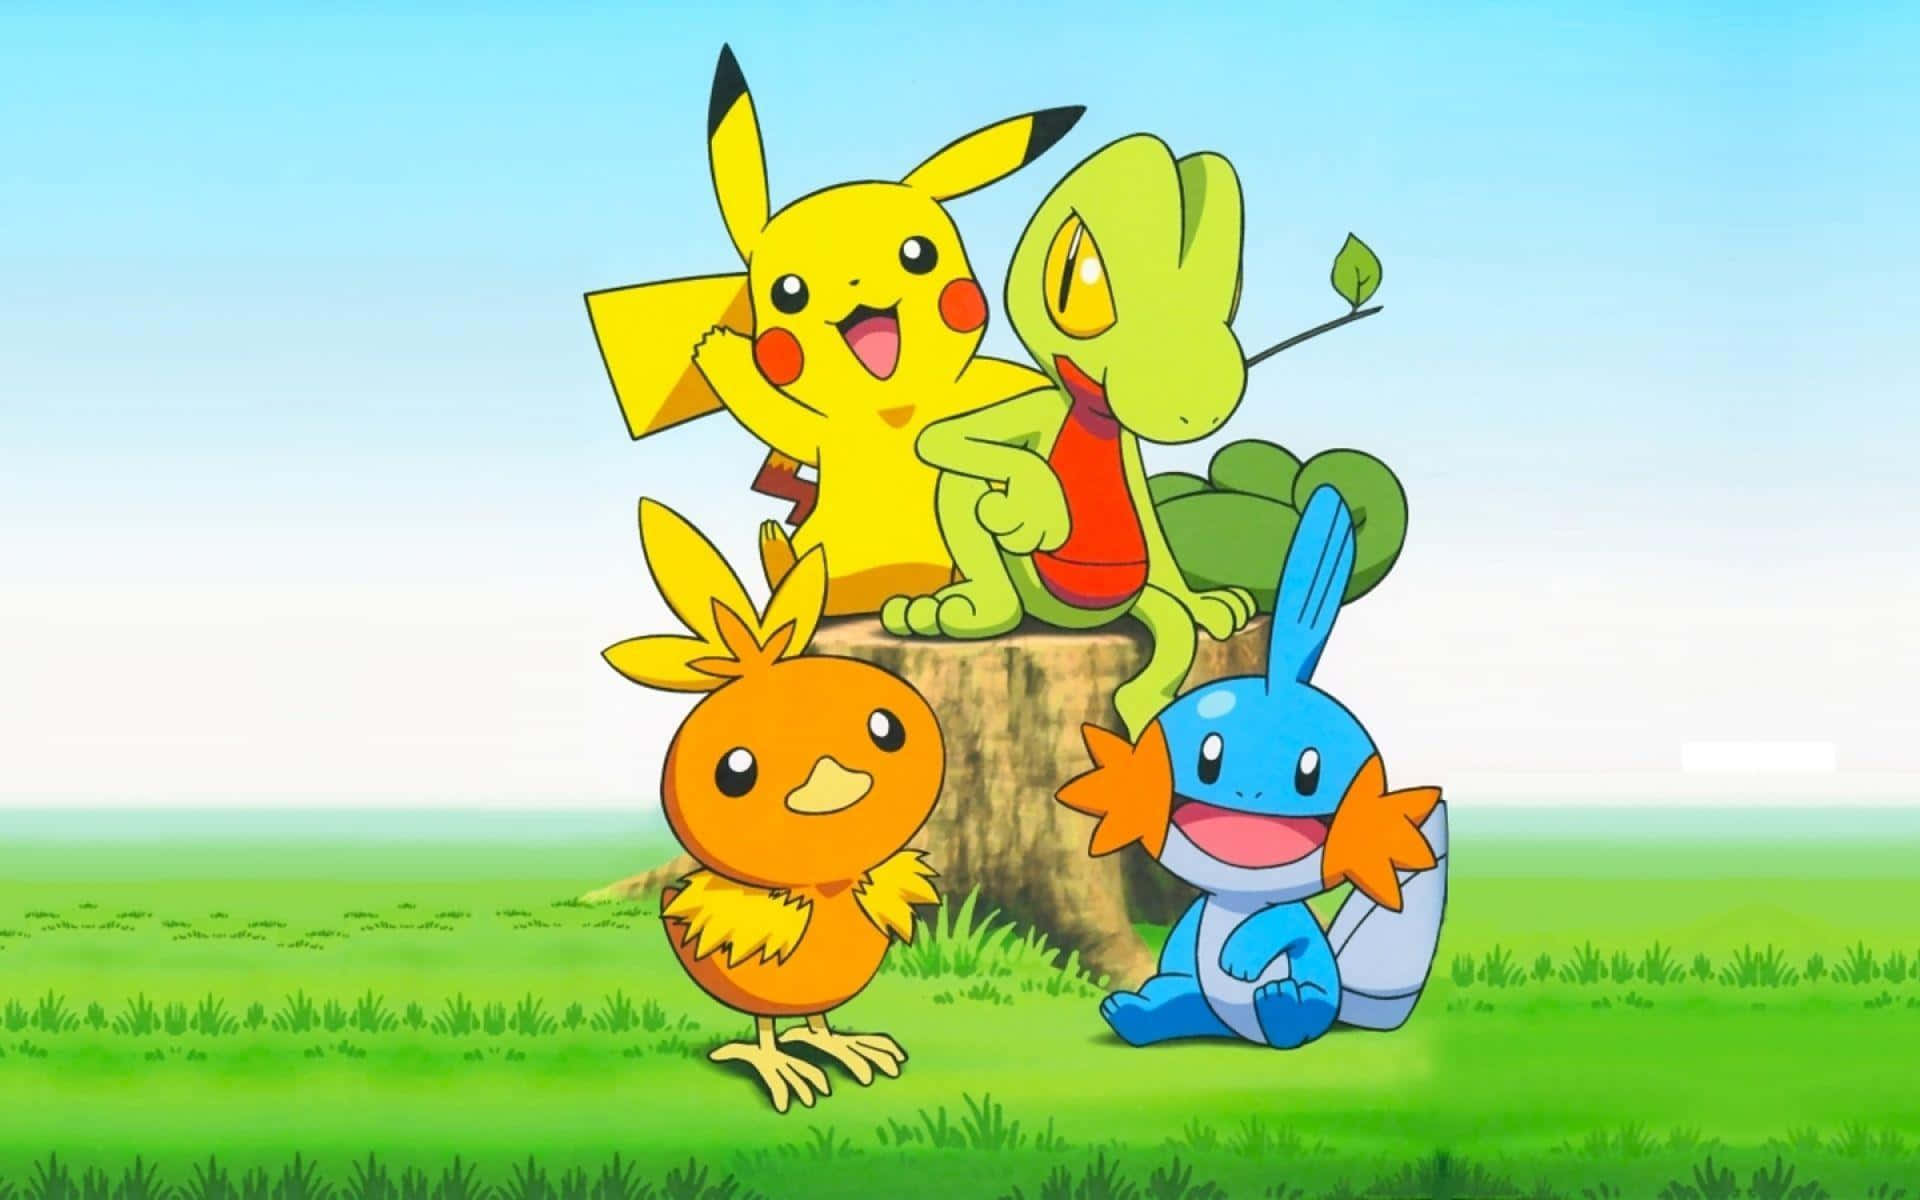 Preparatiper Un'avventura Emozionante Con Pikachu!